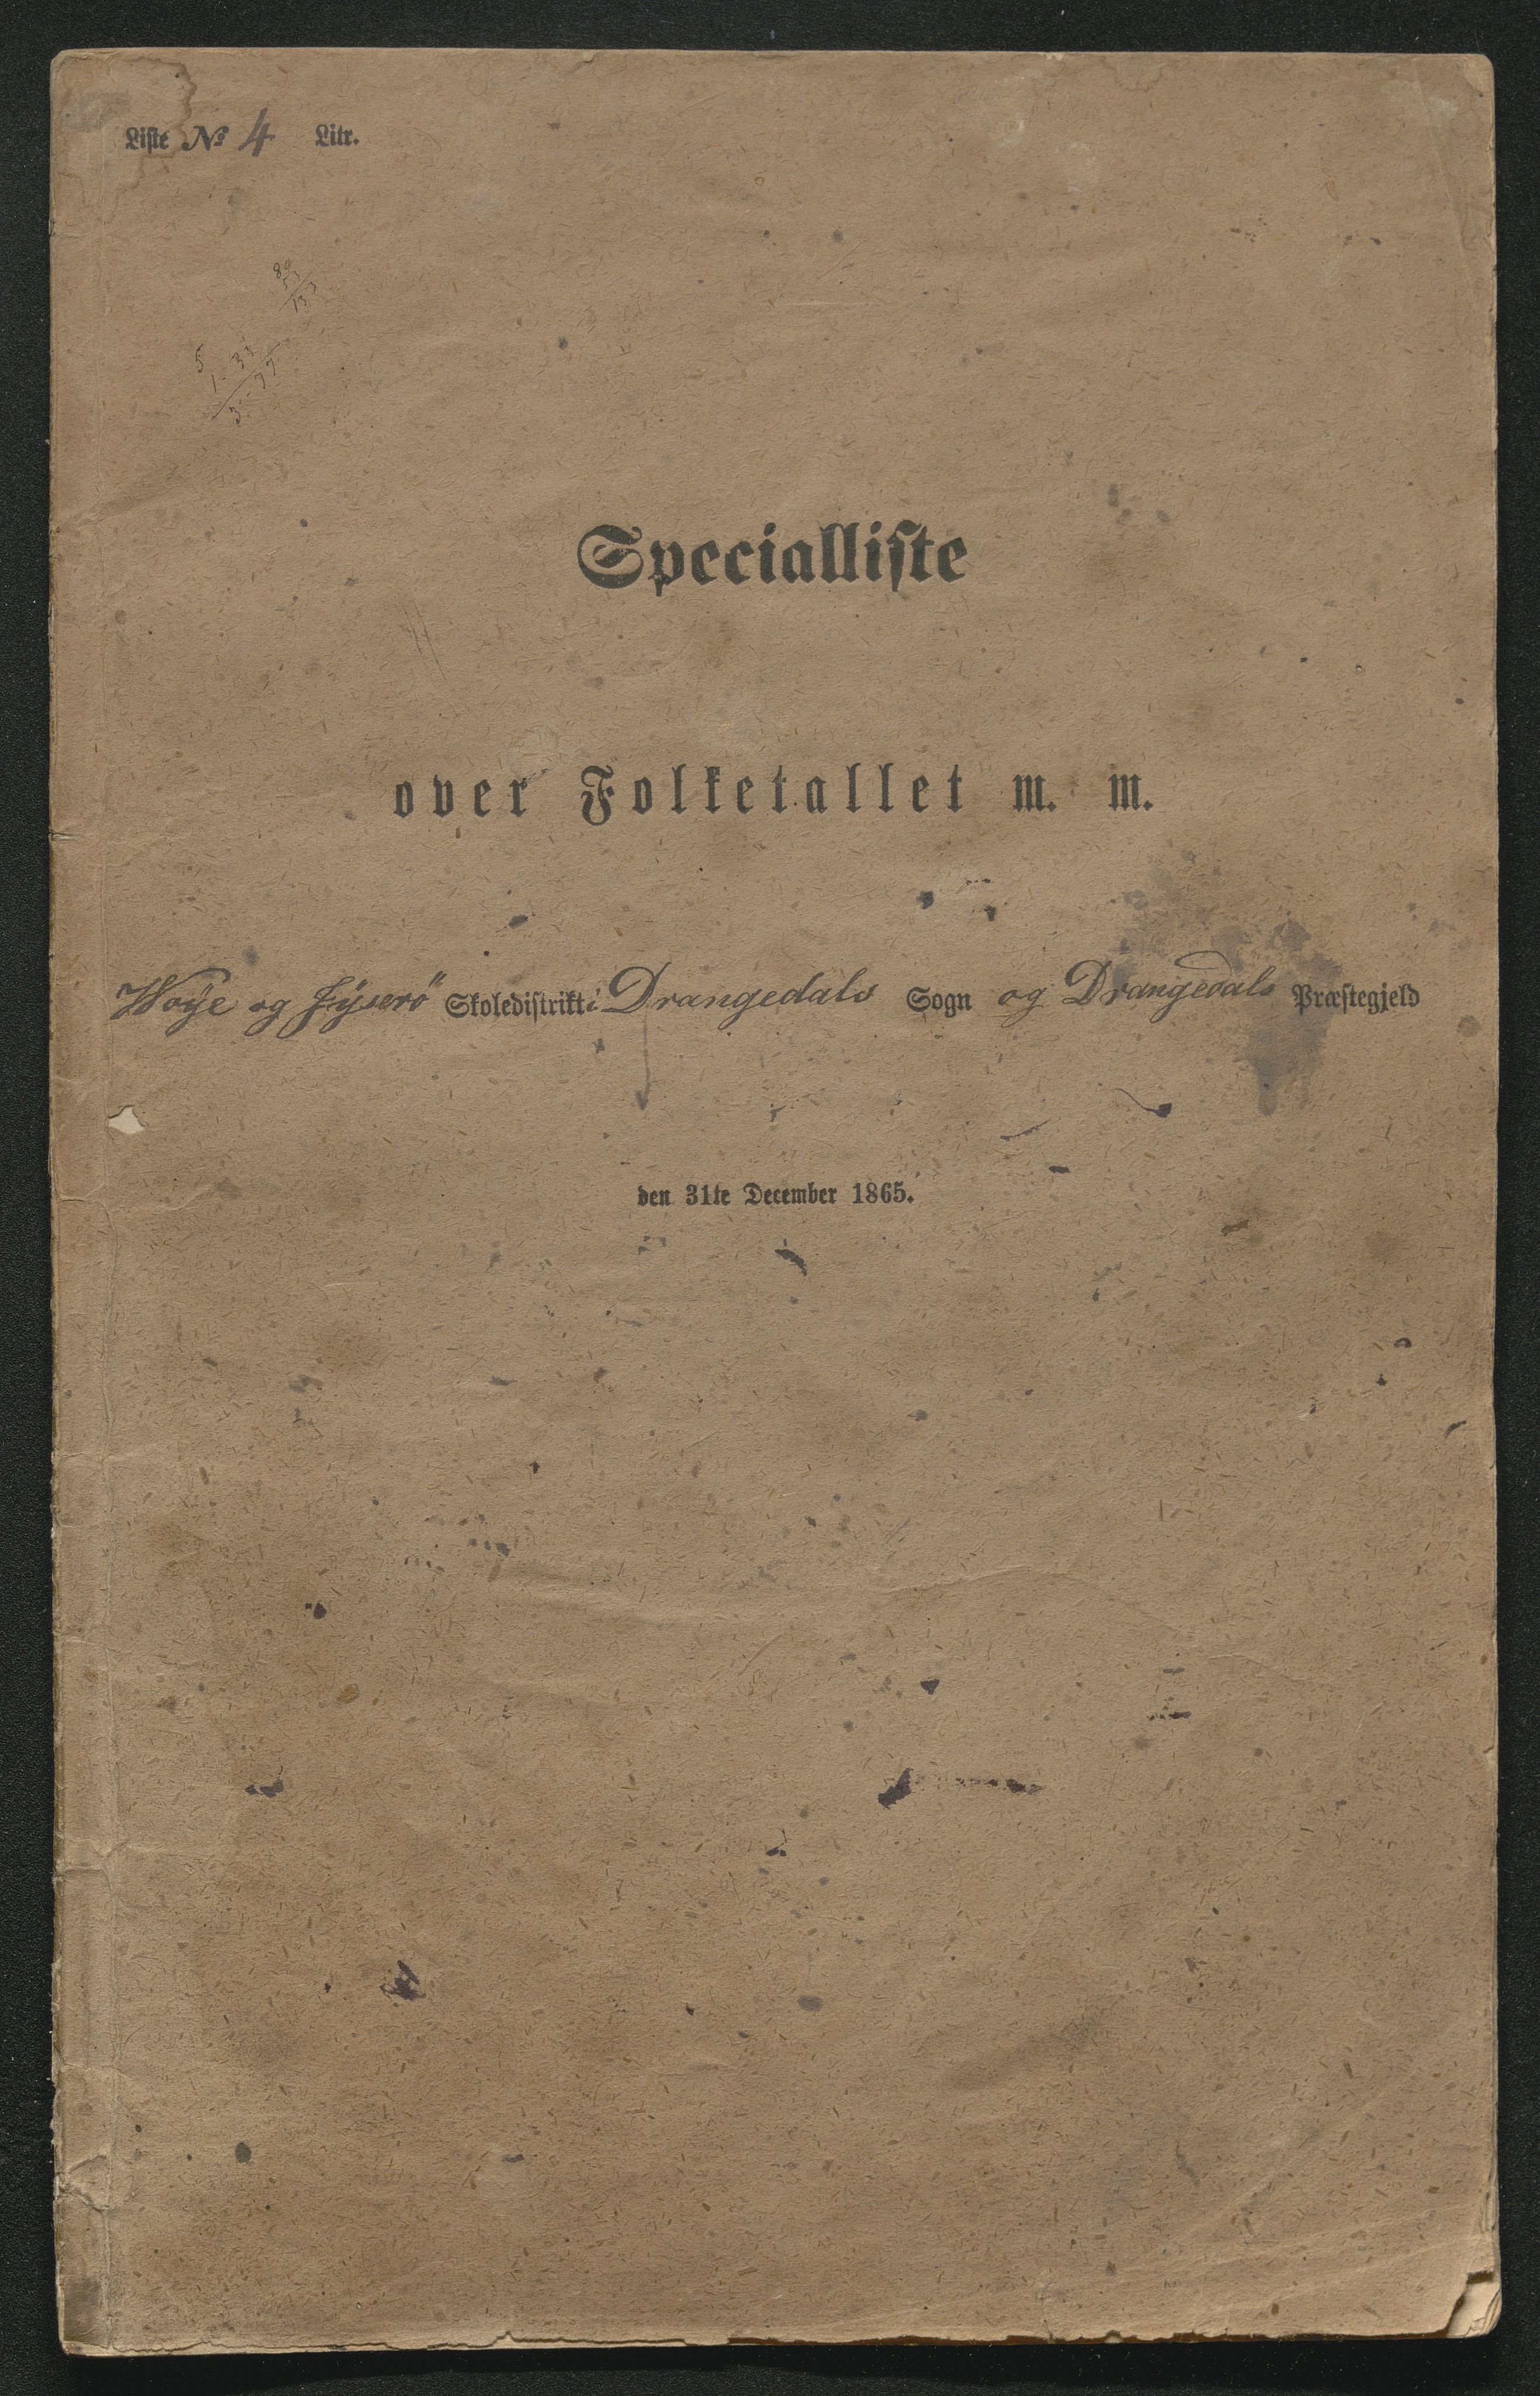 SAKO, Fantetellingen i Drangedal 1865, 1865, s. 74